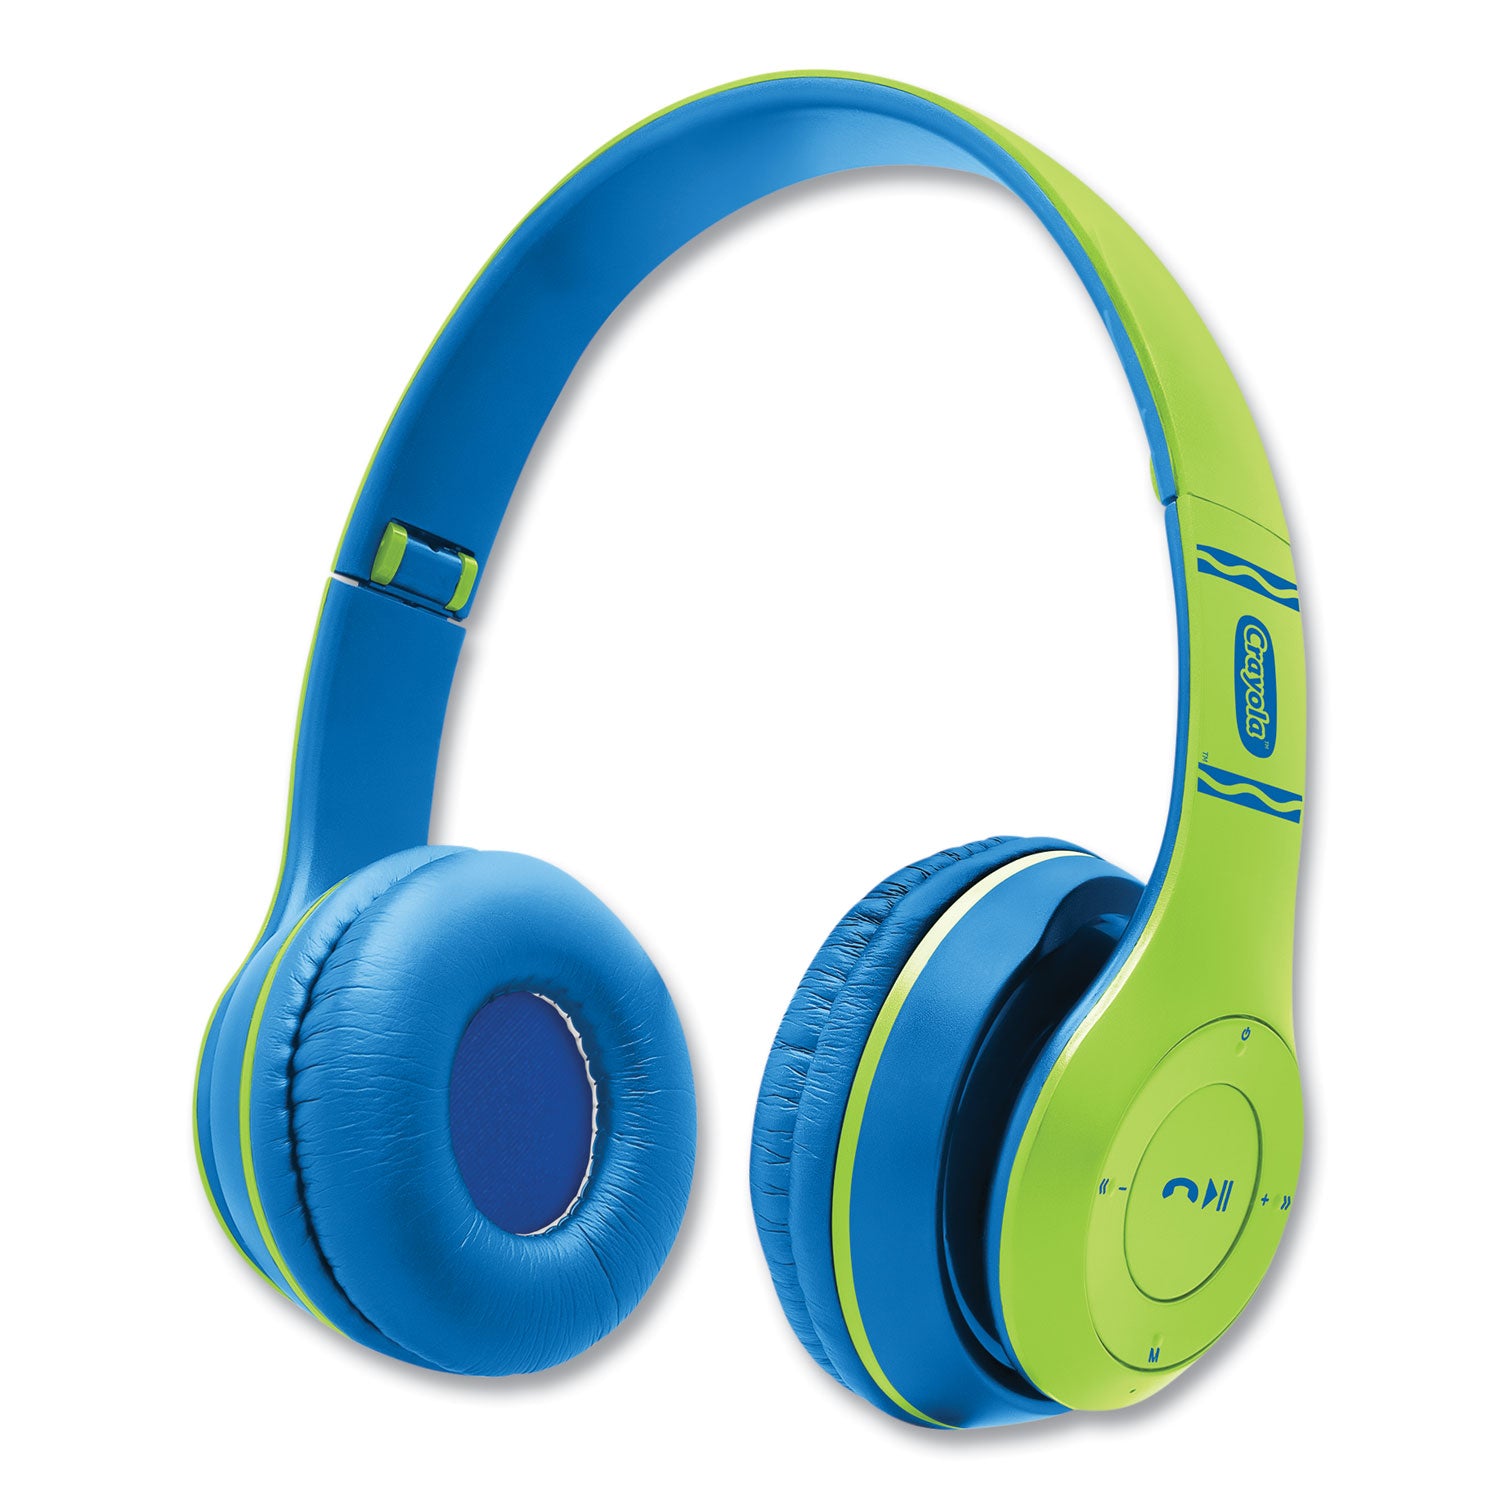 boost-active-wireless-headphones-green-blue_migchpbt348grn - 1